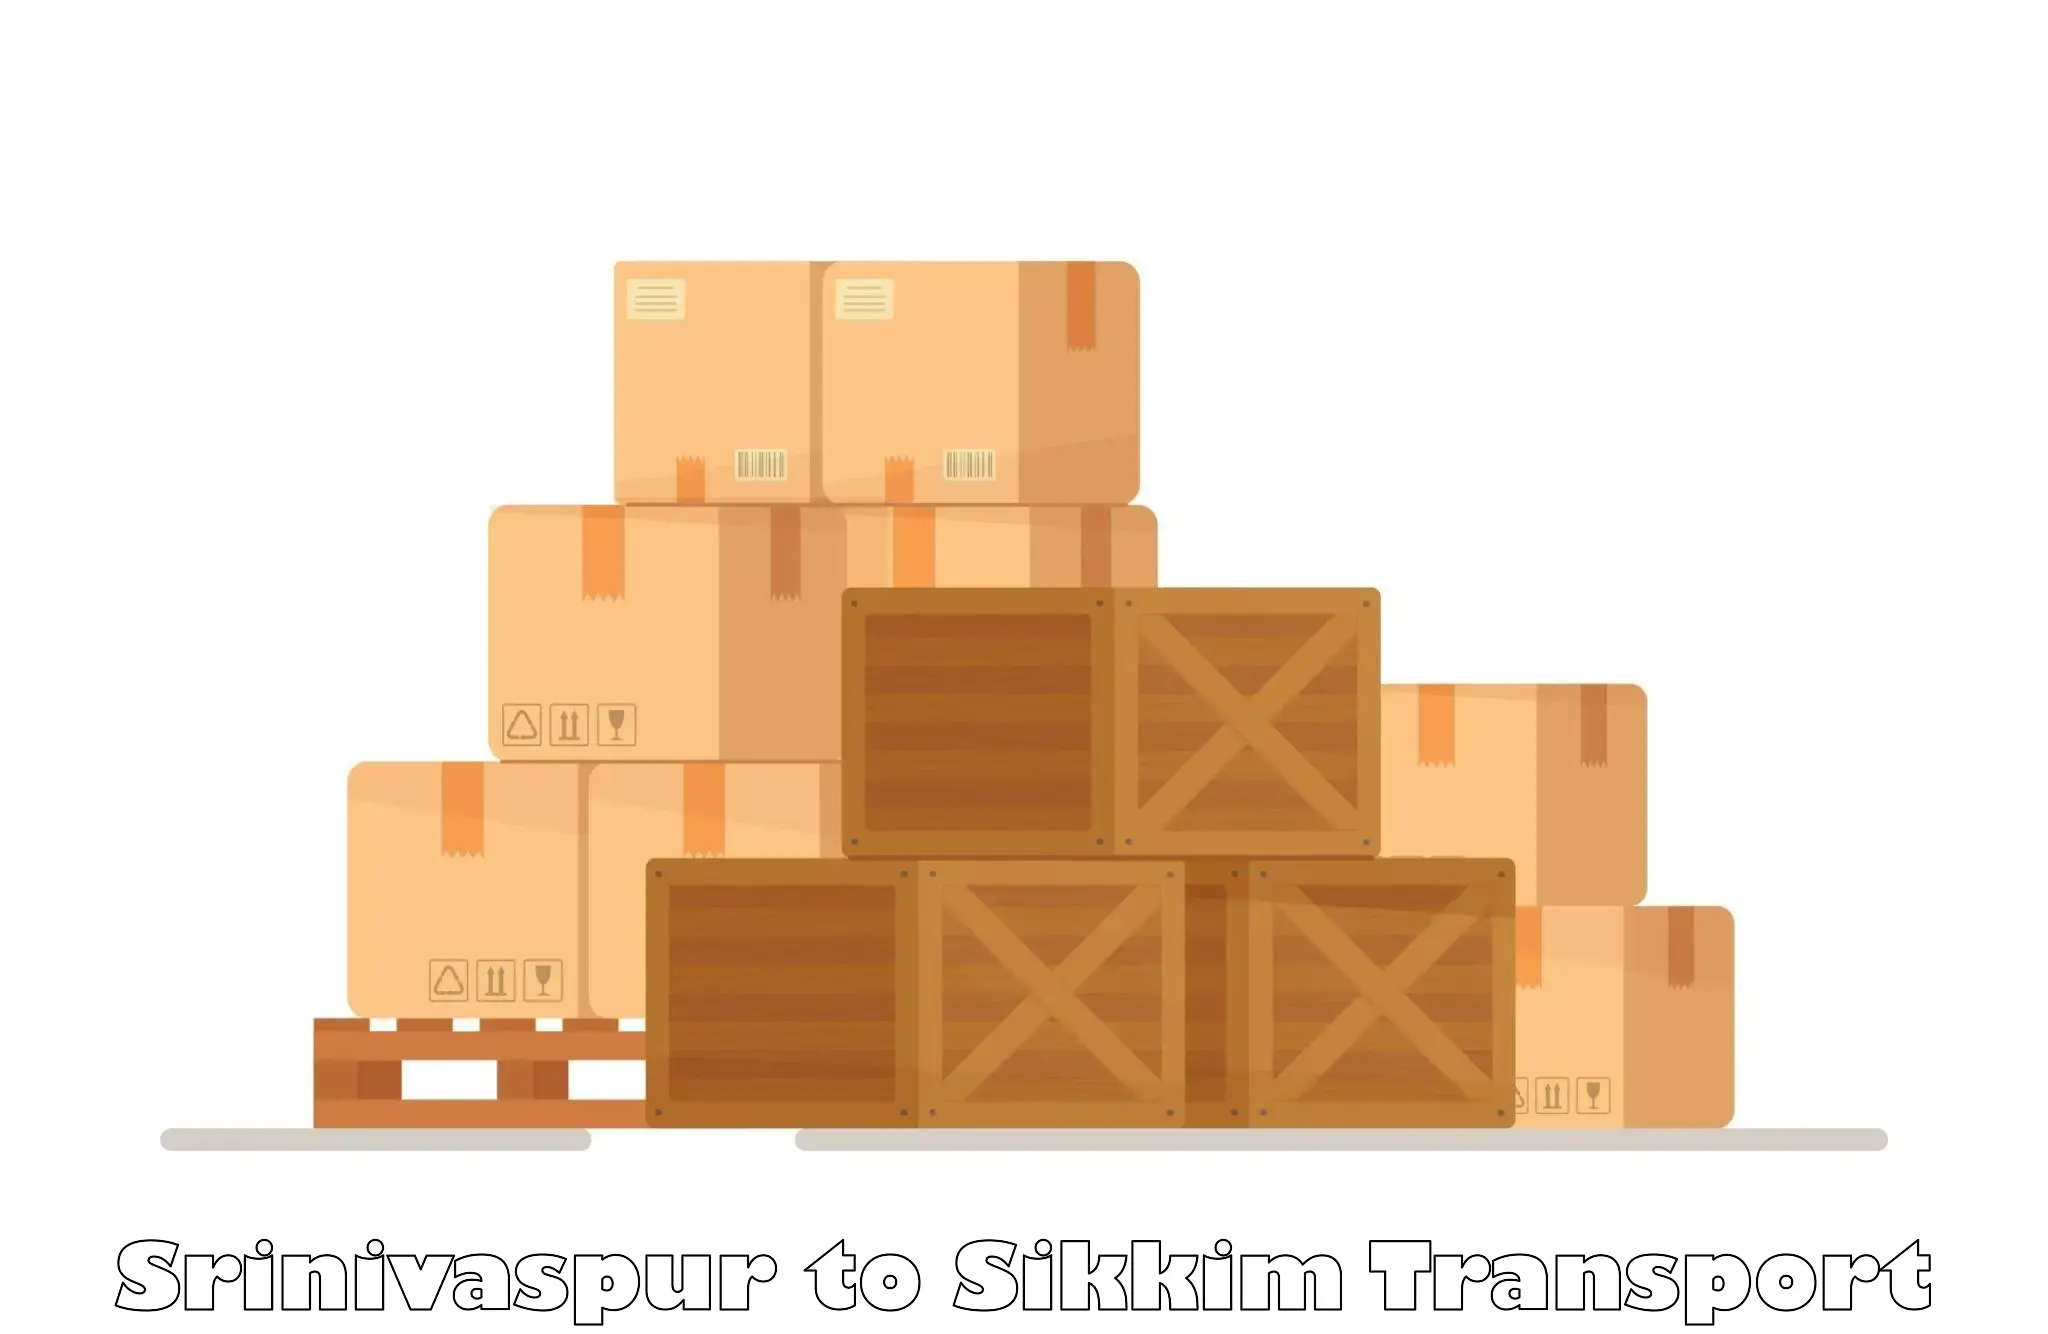 Transport in sharing Srinivaspur to Singtam